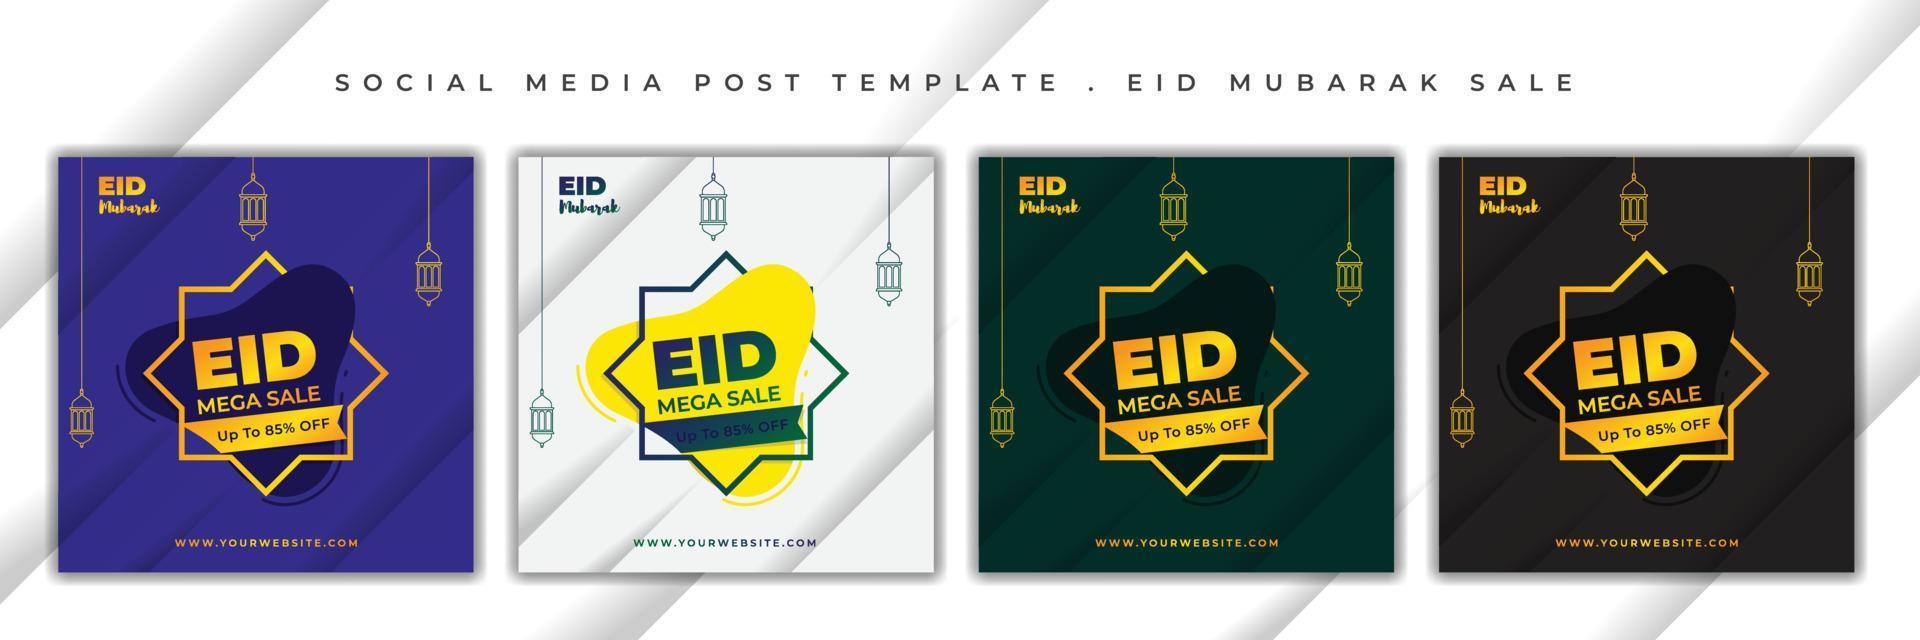 publicación en las redes sociales de eid mubarak. conjunto de plantillas de publicaciones en medios sociales con diseño de concepto islámico. vector